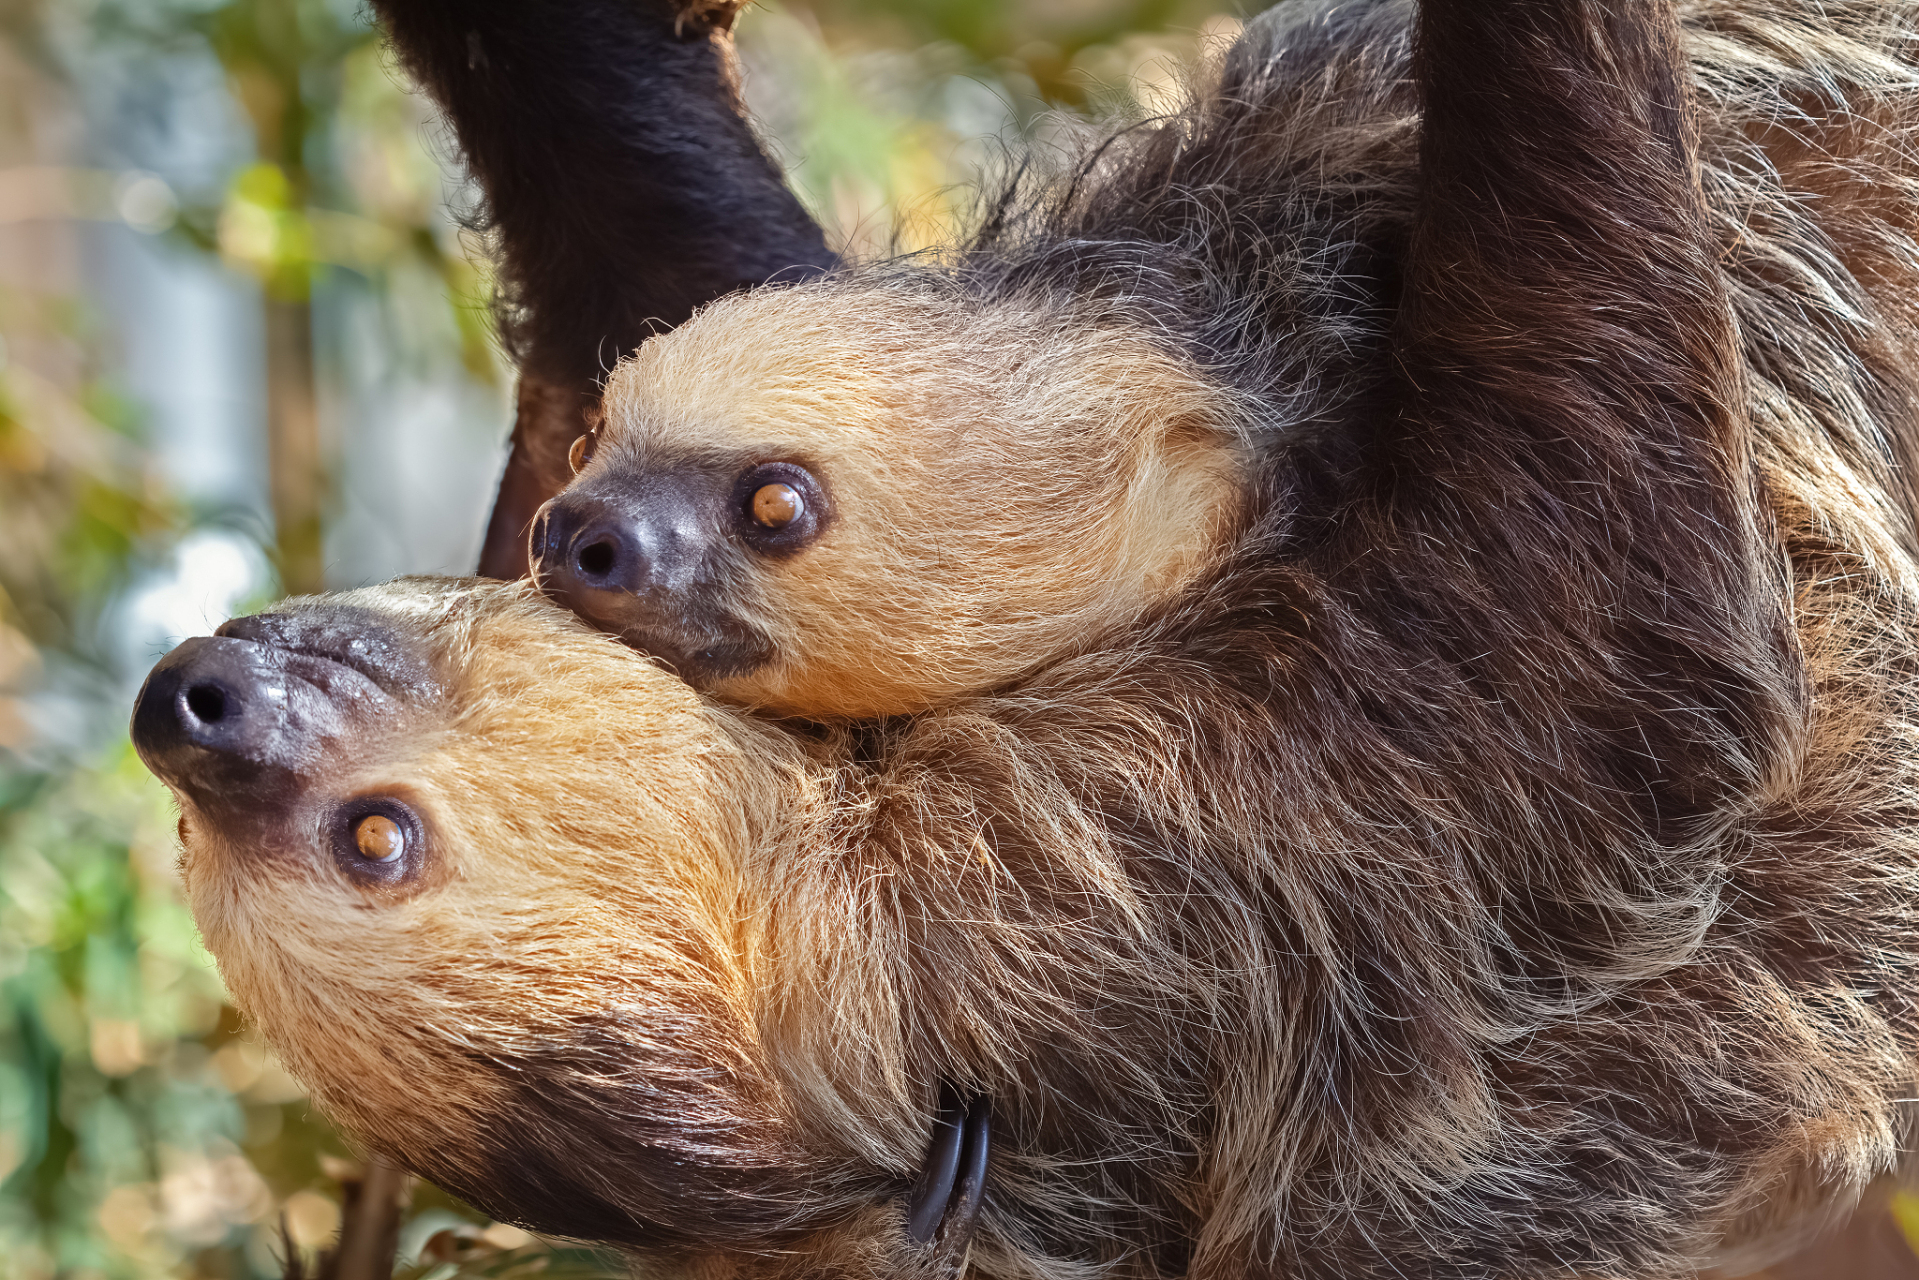 树懒是南美洲热带雨林中的独特哺乳动物,以缓慢移动和树栖生活著称